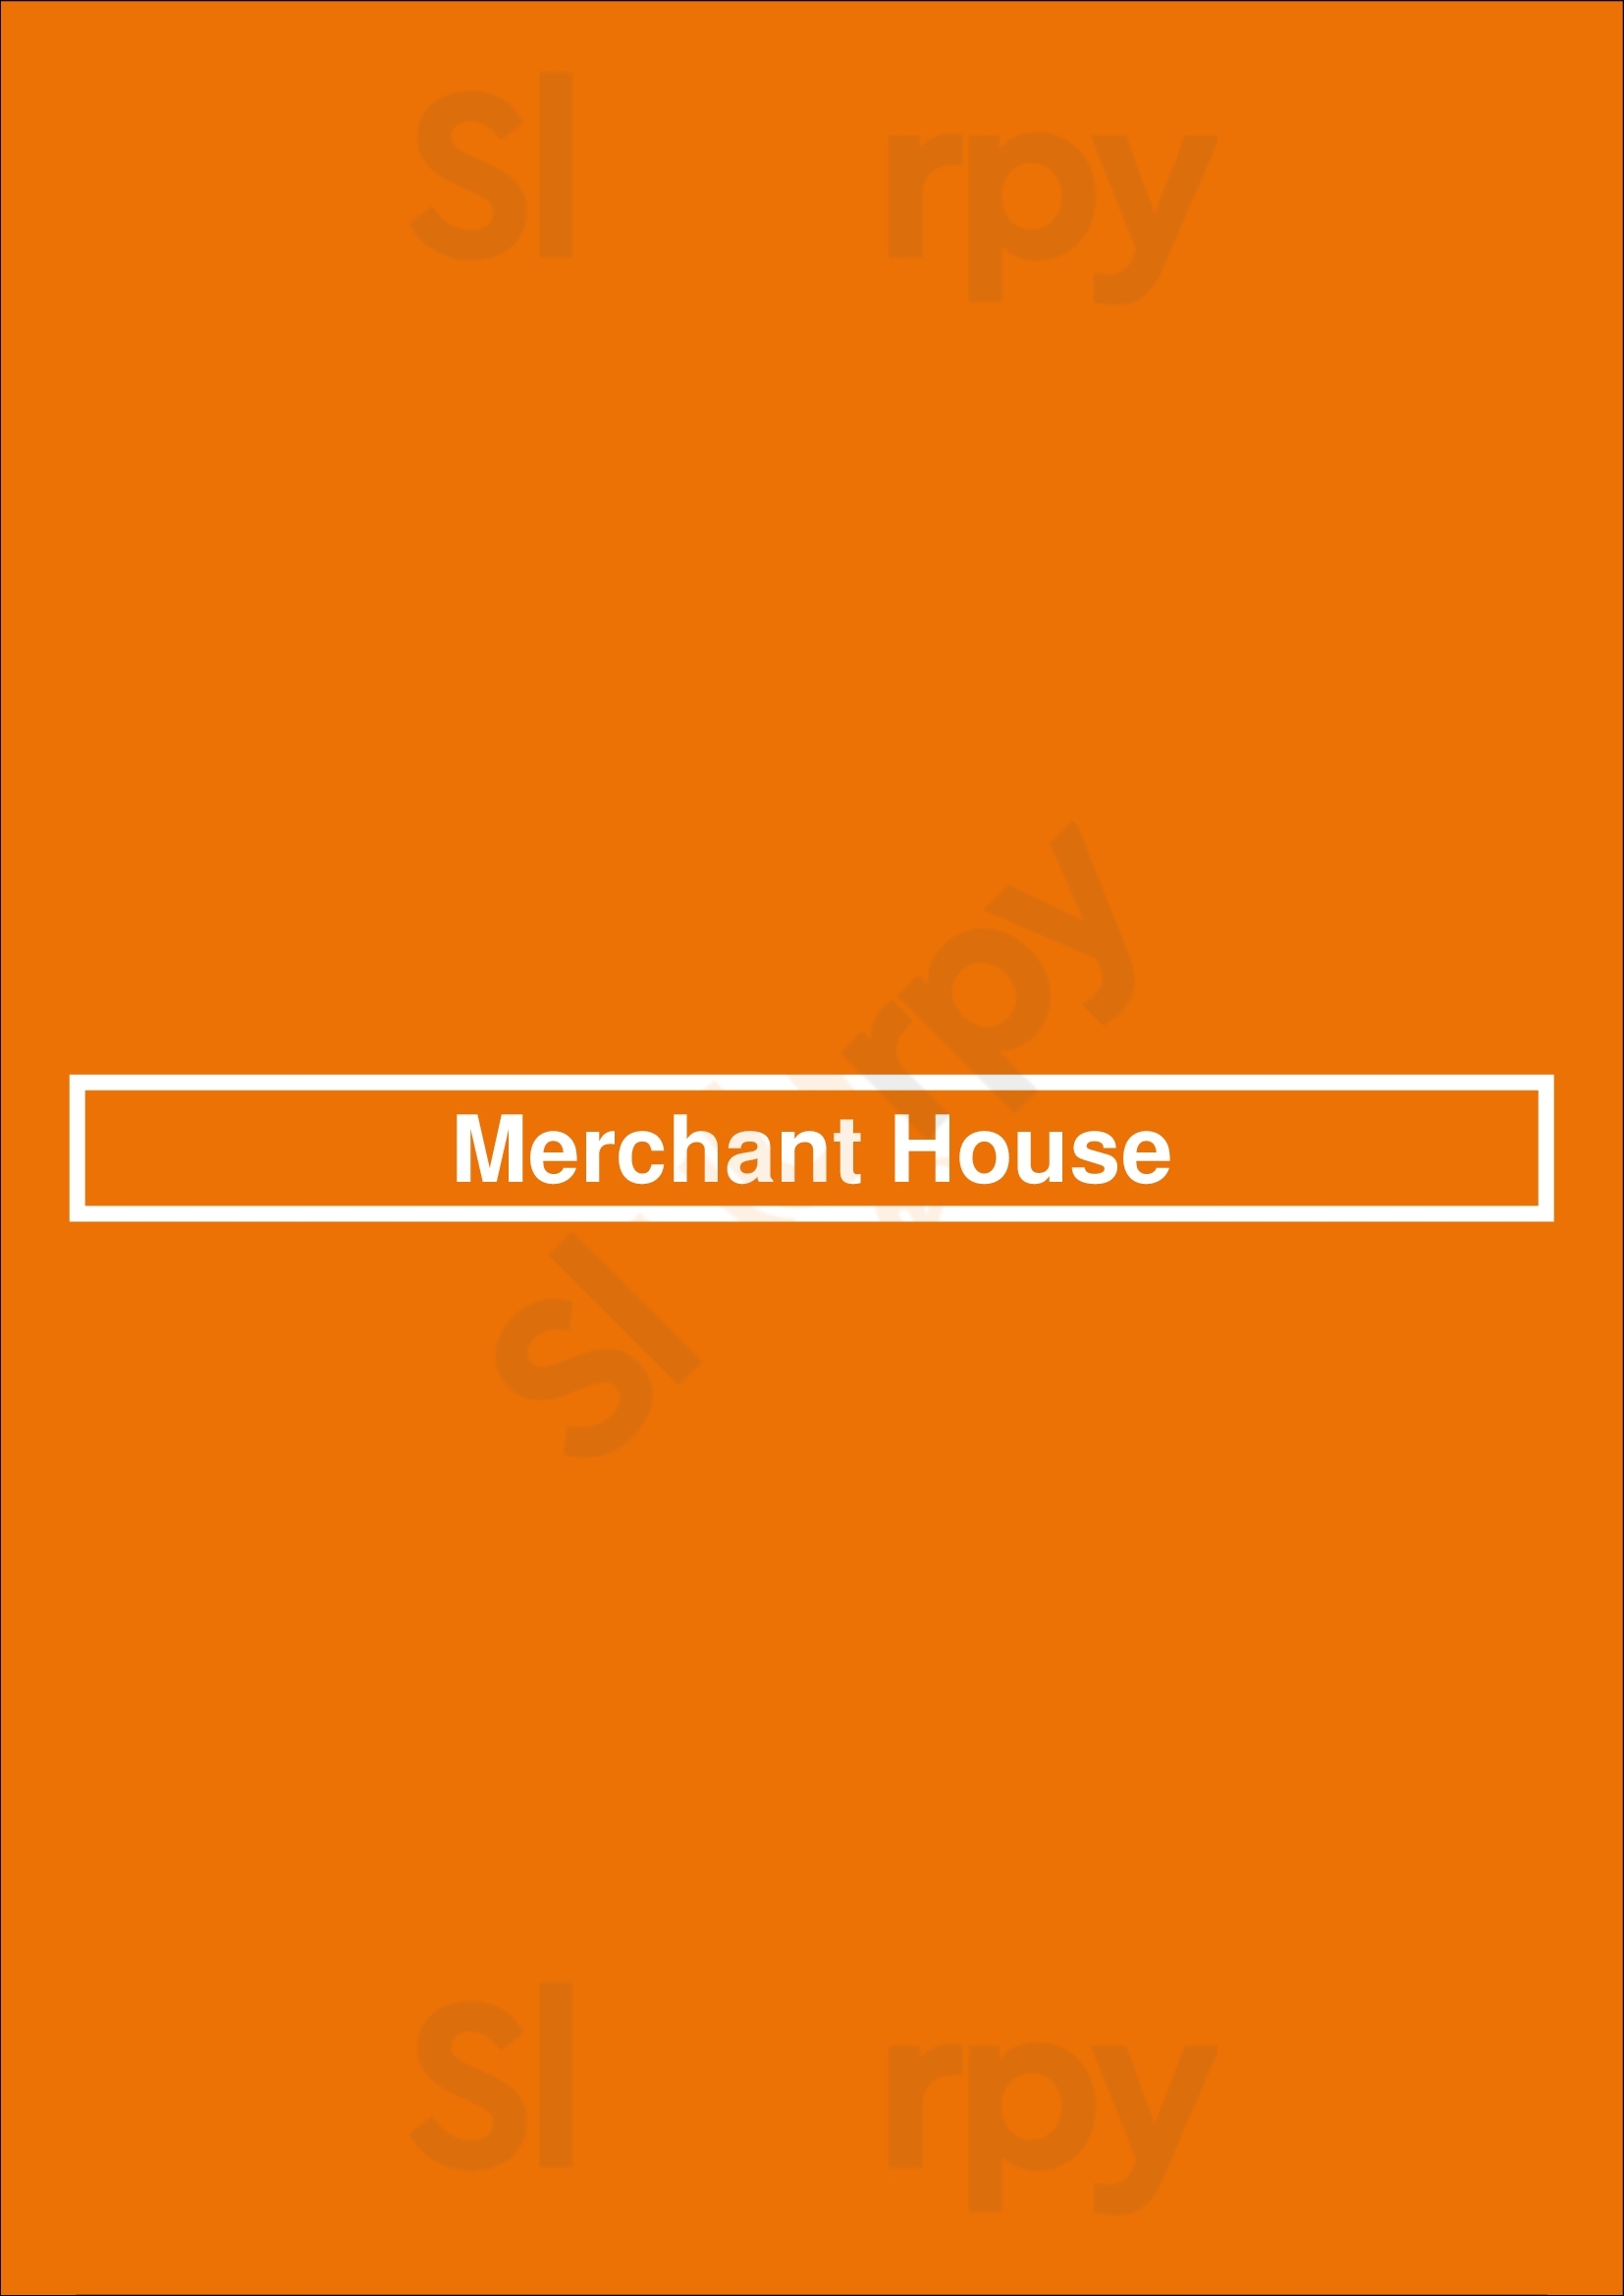 Merchant House Dallas Menu - 1